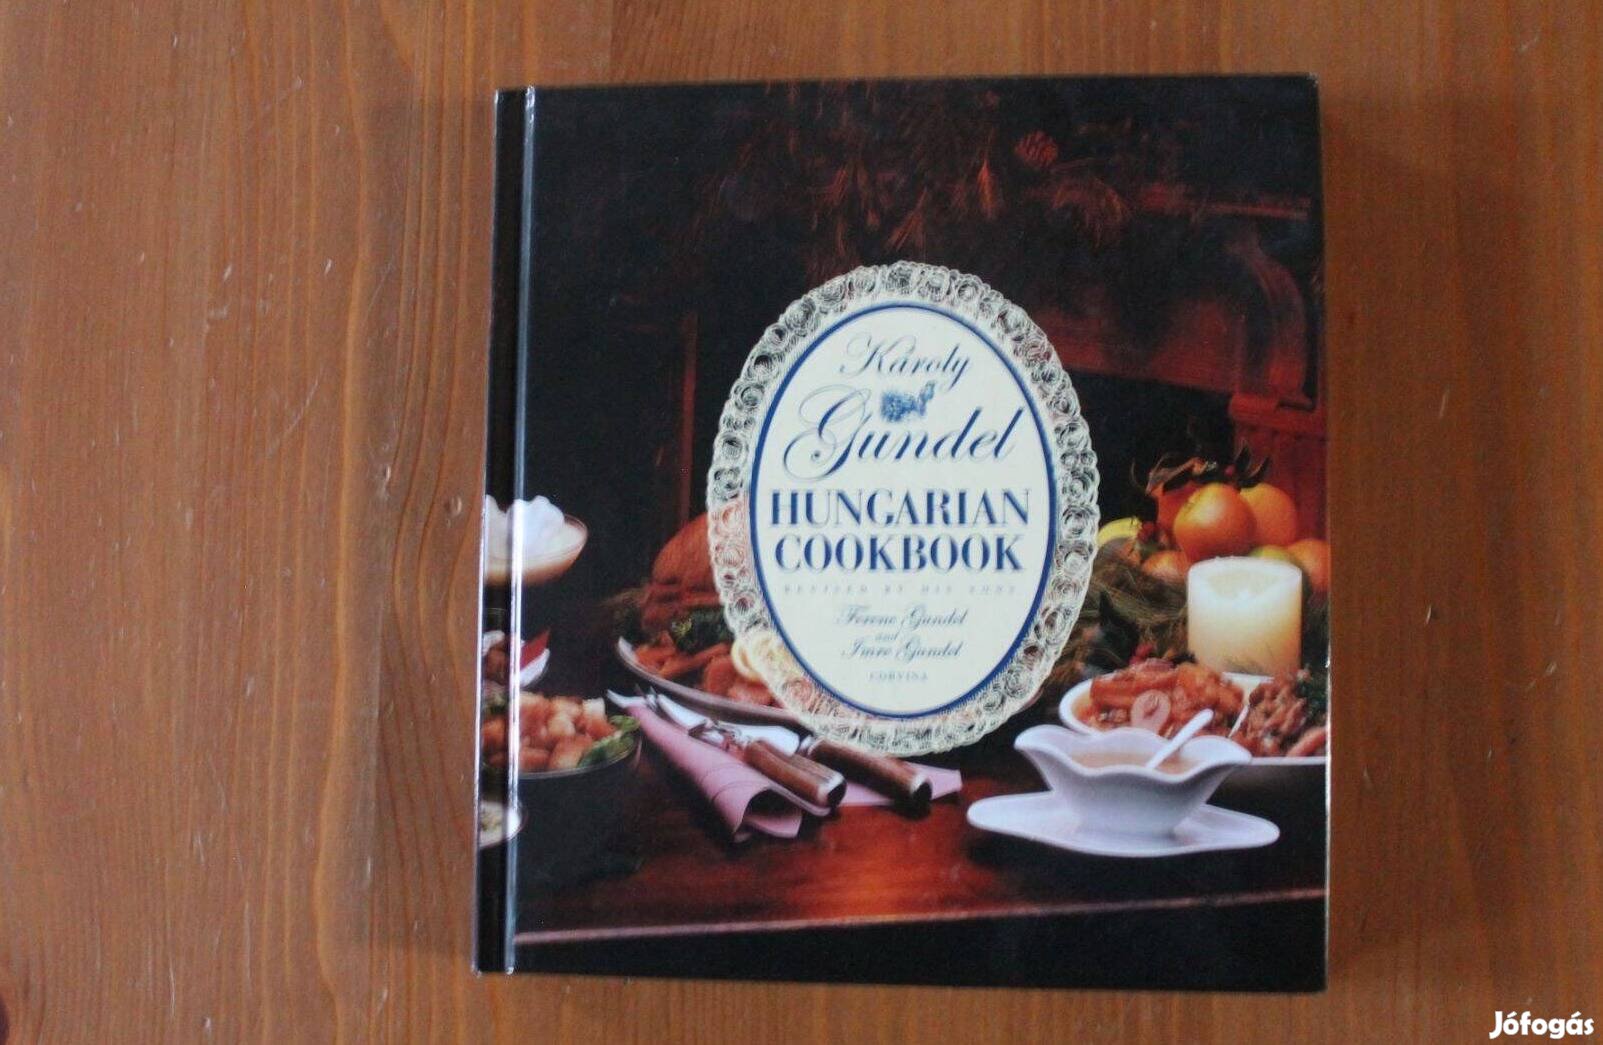 Gundel - Hungarian Cookbook